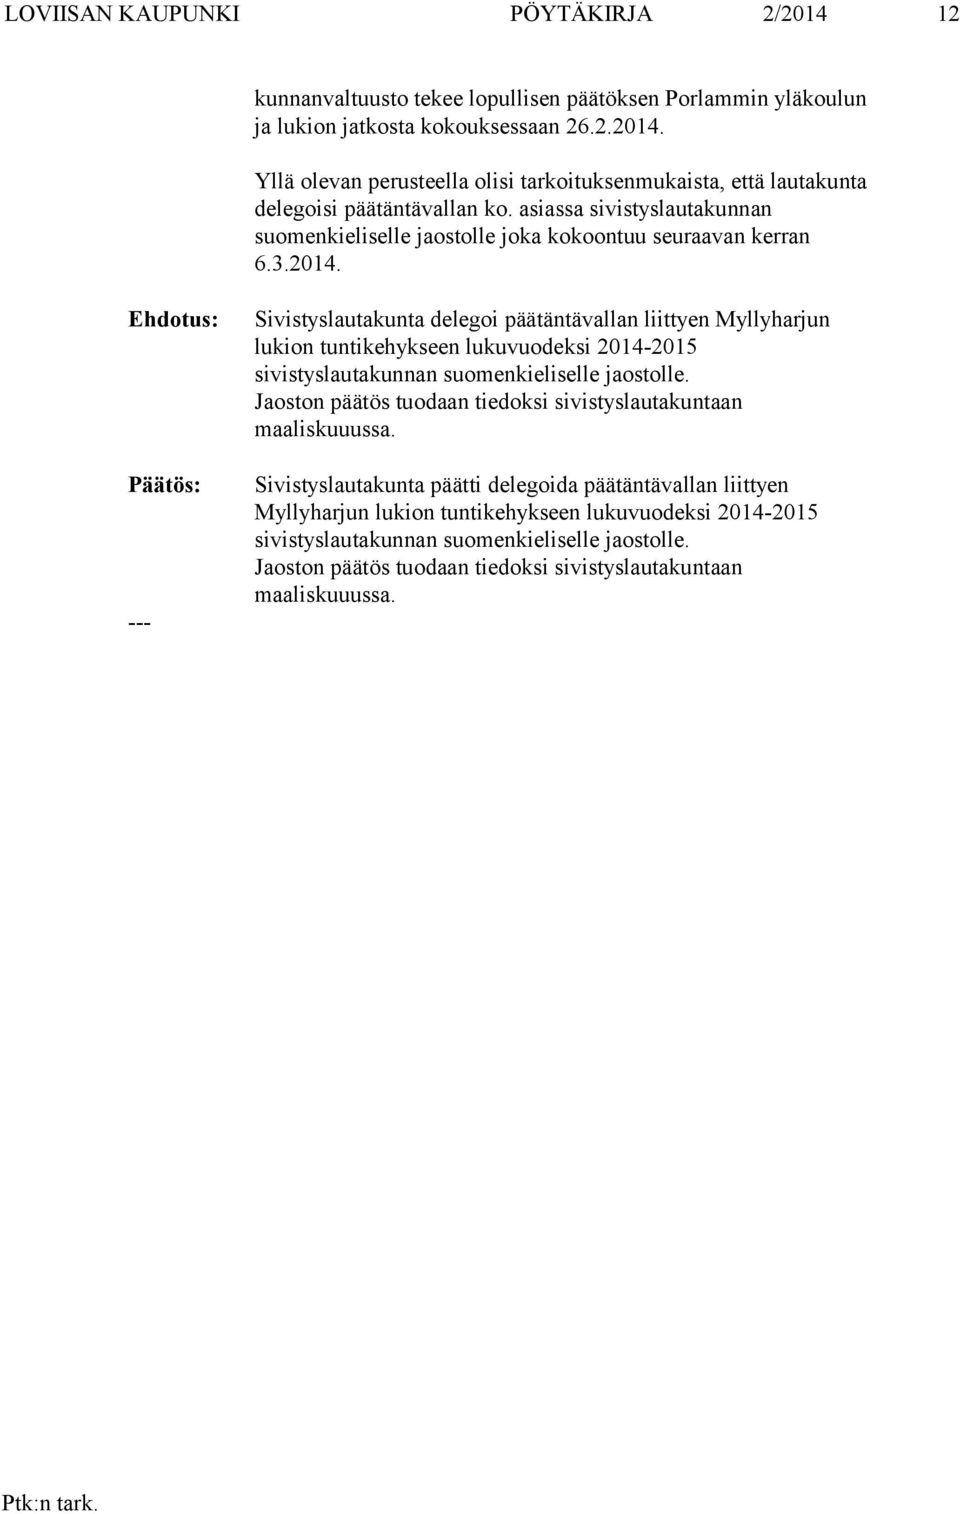 Sivistyslautakunta delegoi päätäntävallan liittyen Myllyharjun lukion tuntikehykseen lukuvuodeksi 2014-2015 sivistyslautakunnan suomenkieliselle jaostolle.